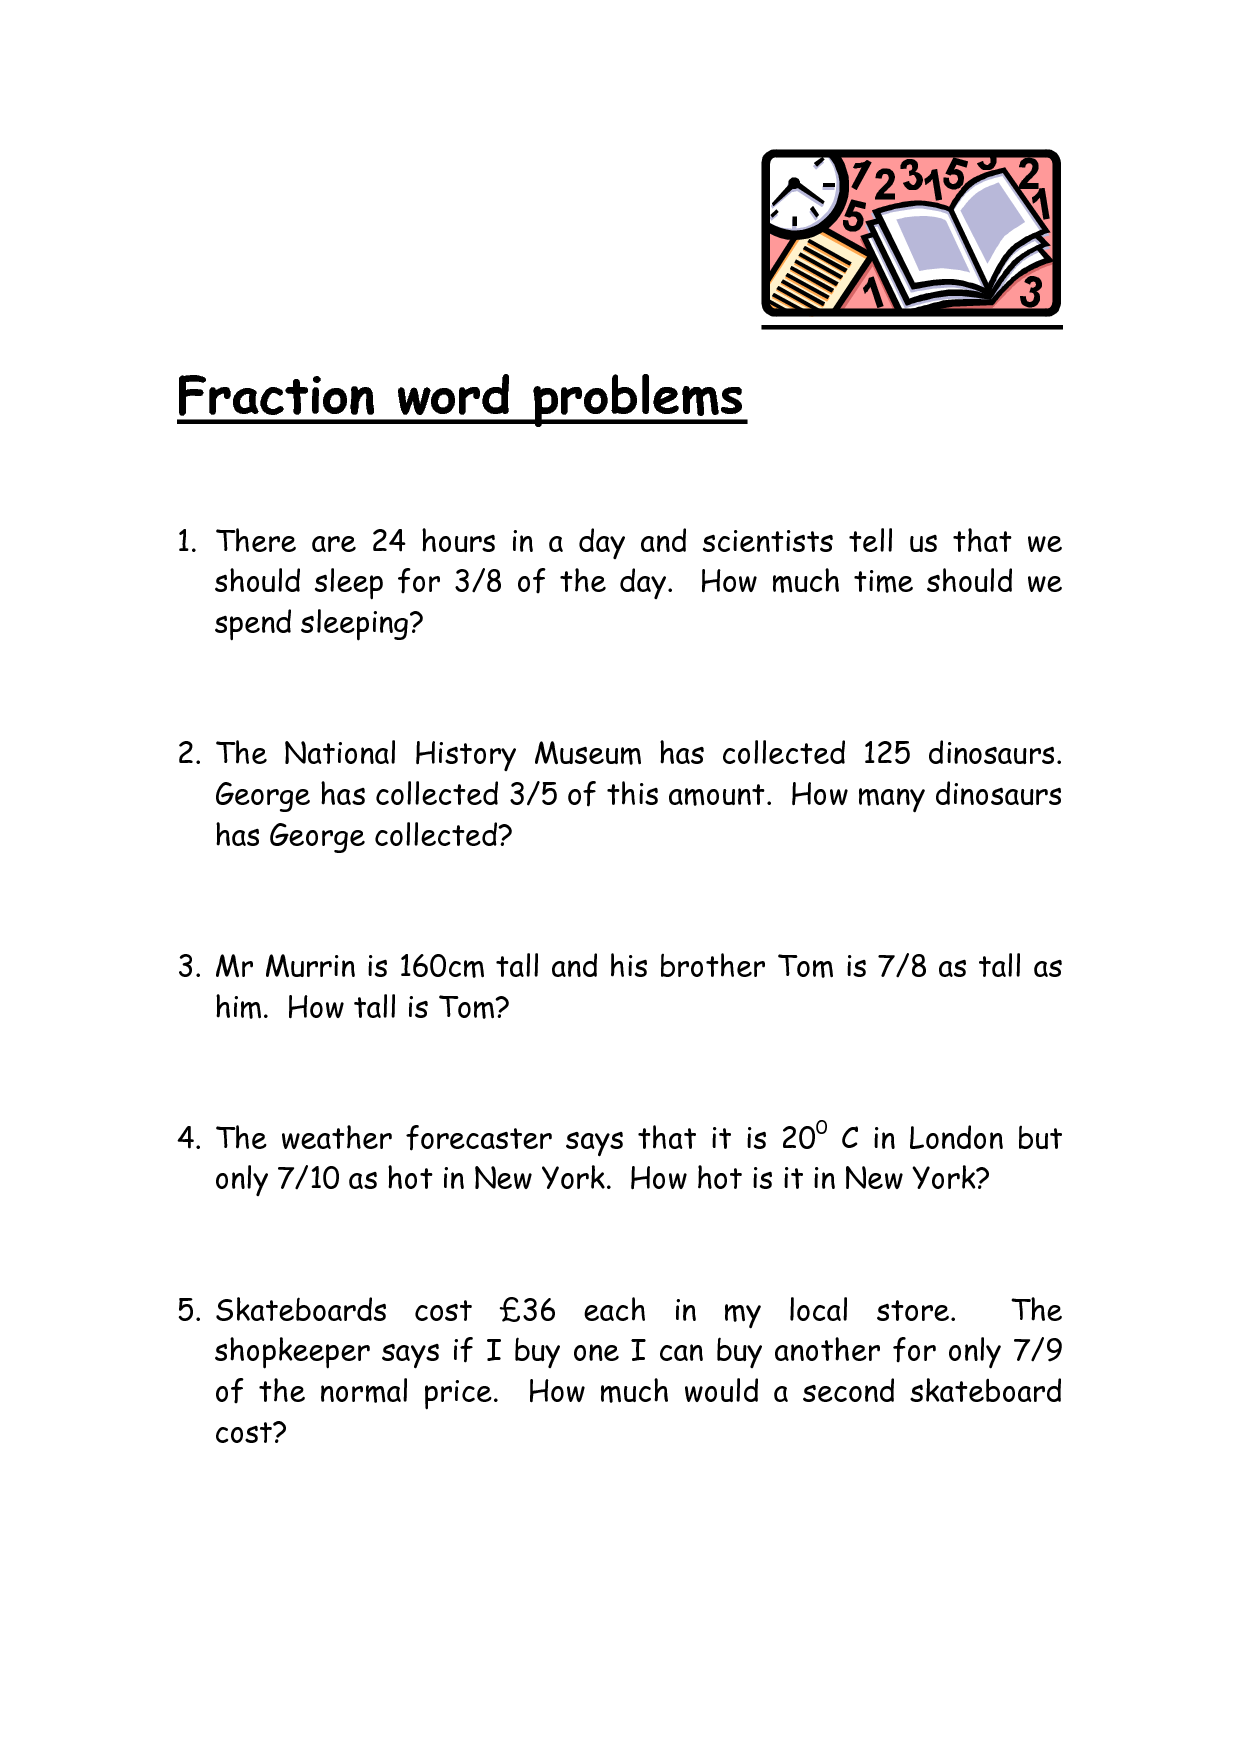 21 Best Images of Fraction Worksheets 21rd Grade Printable 21rd Inside Dividing Fractions Word Problems Worksheet